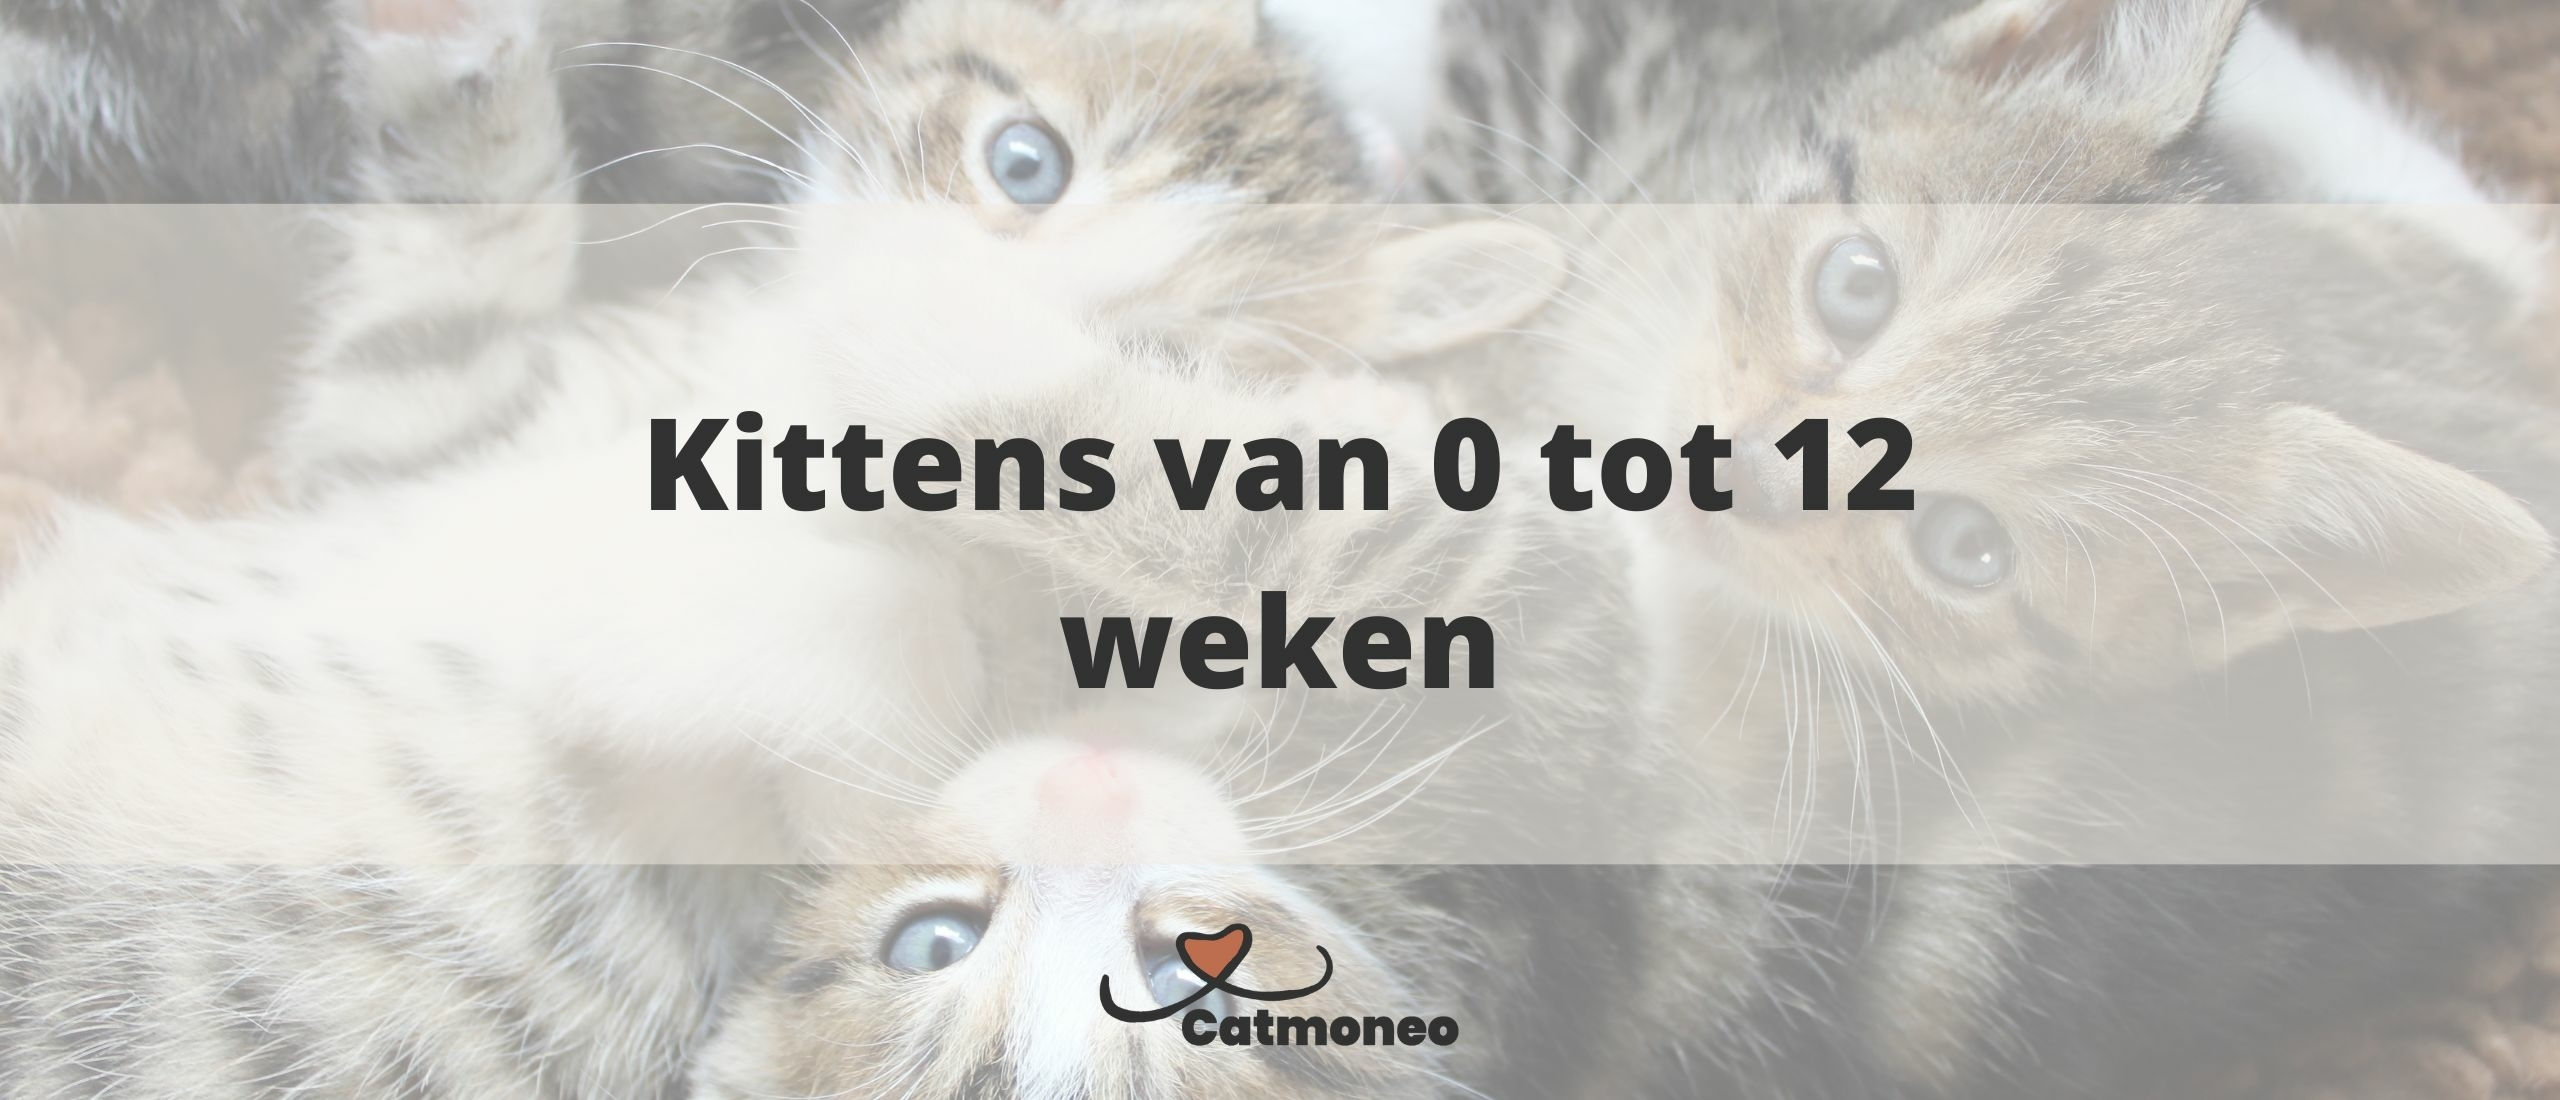 Kittens van 0 tot 12 weken